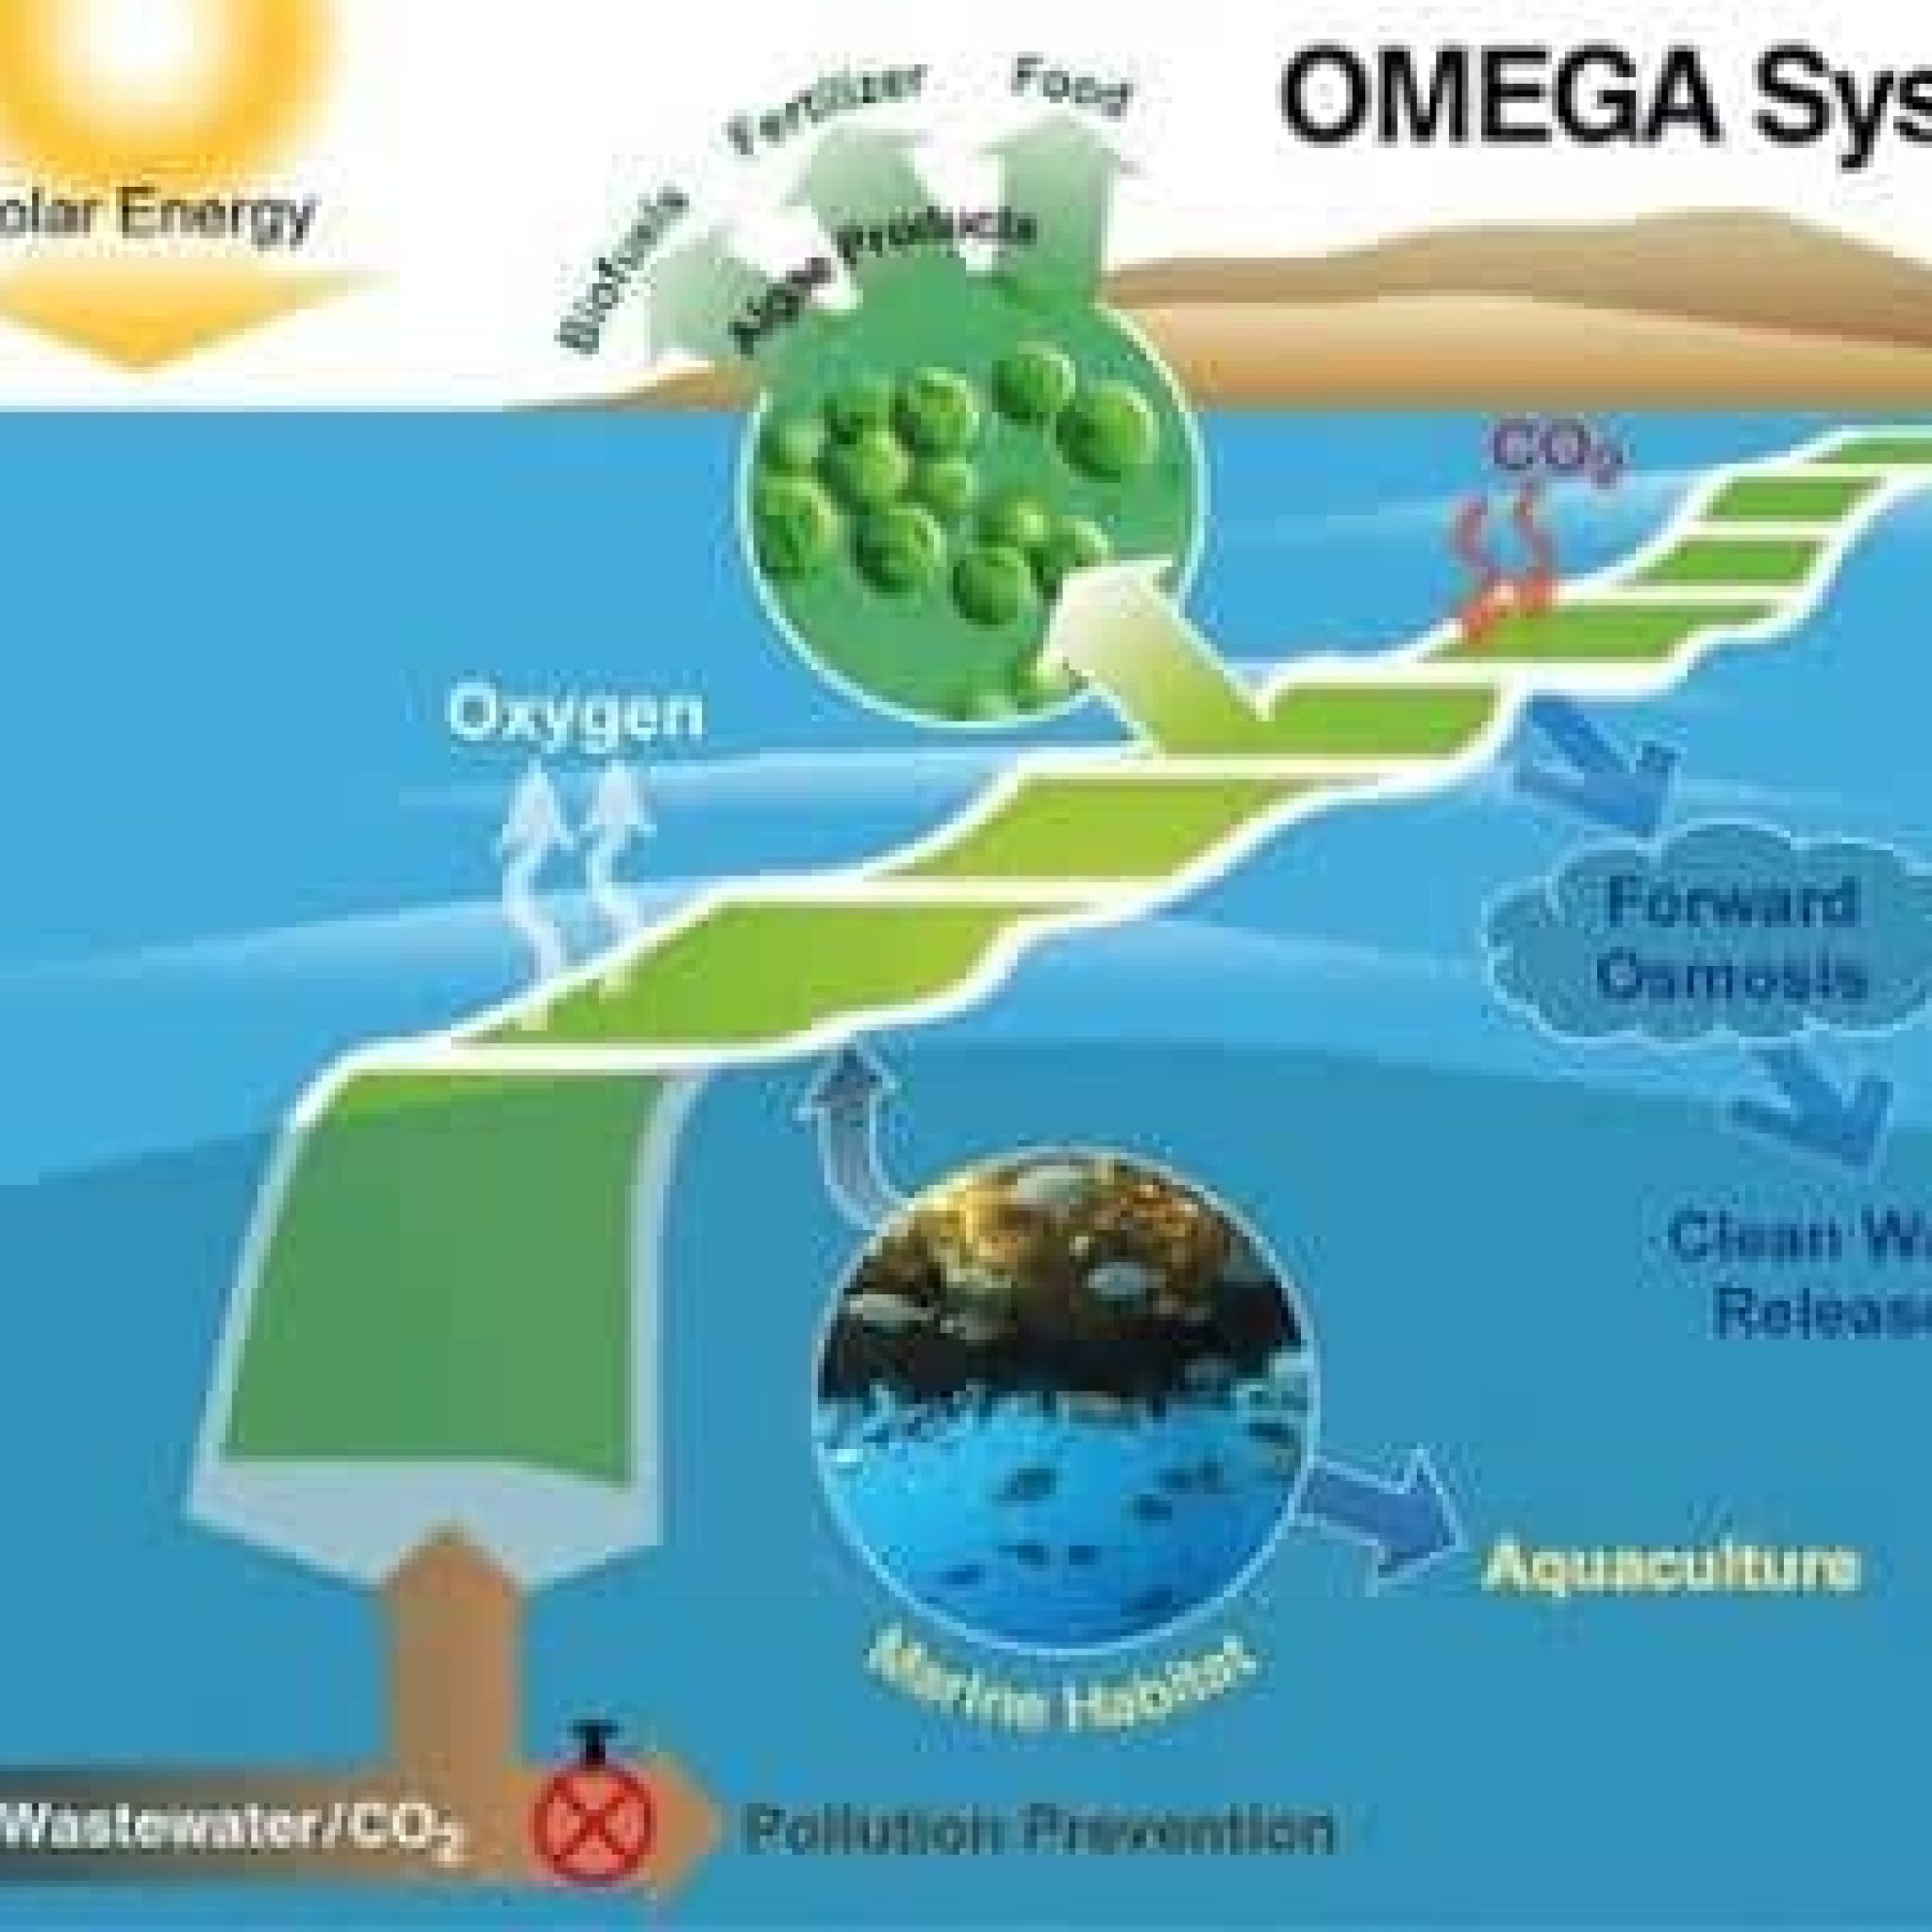 Omega: Un Proyecto De La Nasa Para Generar Biocombustible Sostenible